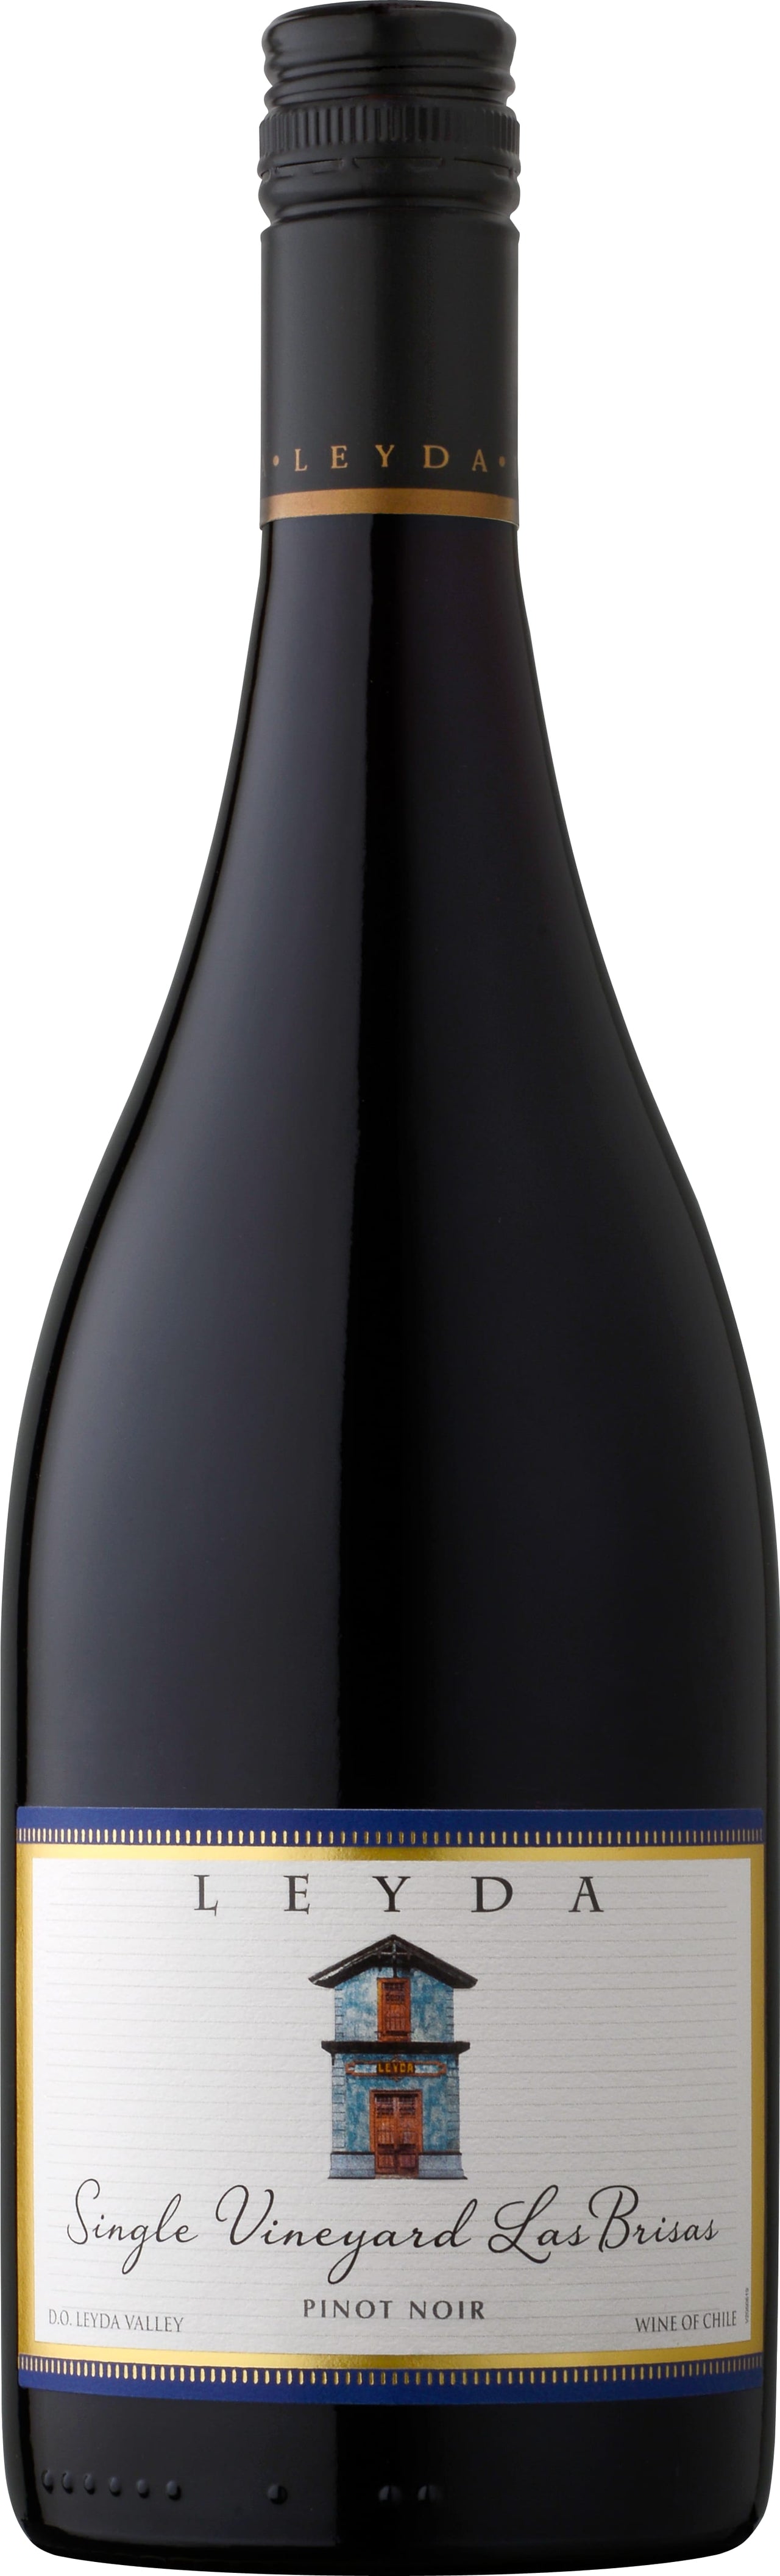 Vina Leyda Pinot Noir Las Brisas 2022 75cl - Buy Vina Leyda Wines from GREAT WINES DIRECT wine shop